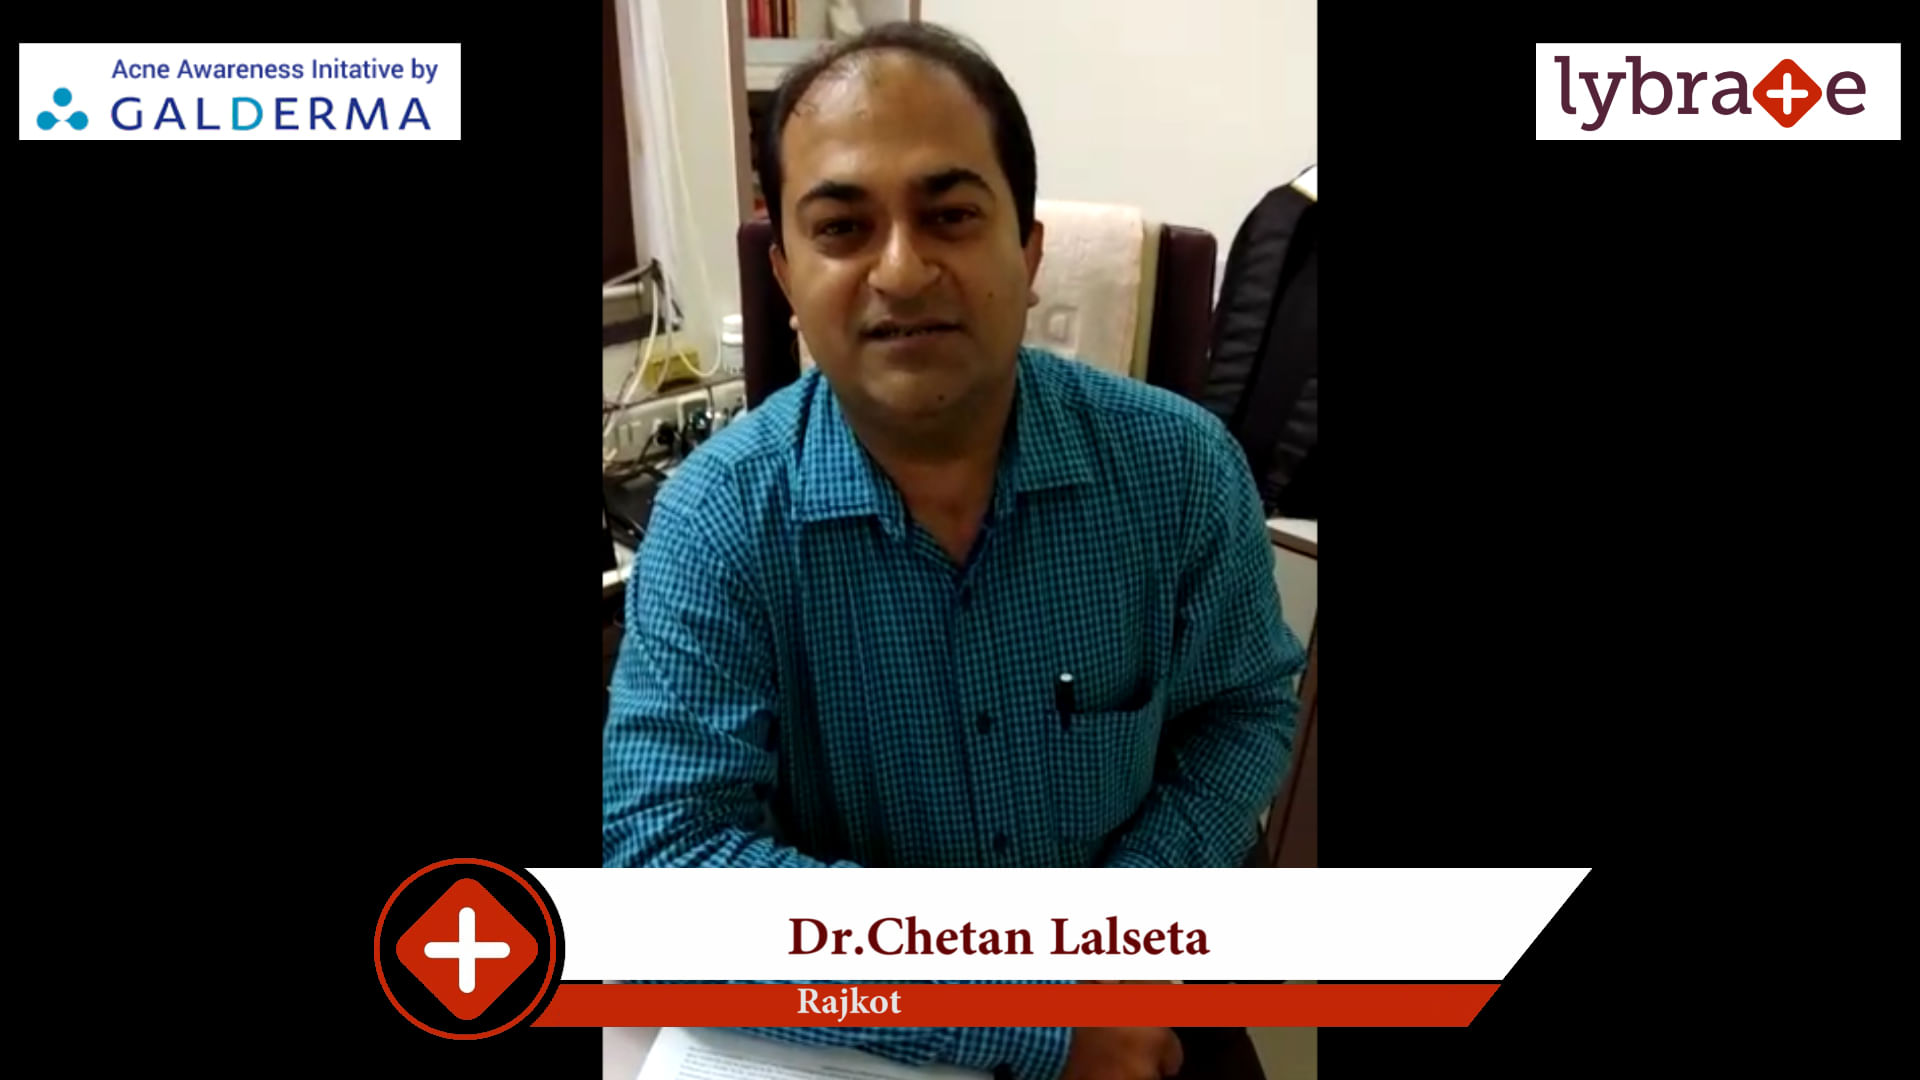 Lybrate | Dr. Chetan Lalseta speaks on IMPORTANCE OF TREATING ACNE EARLY